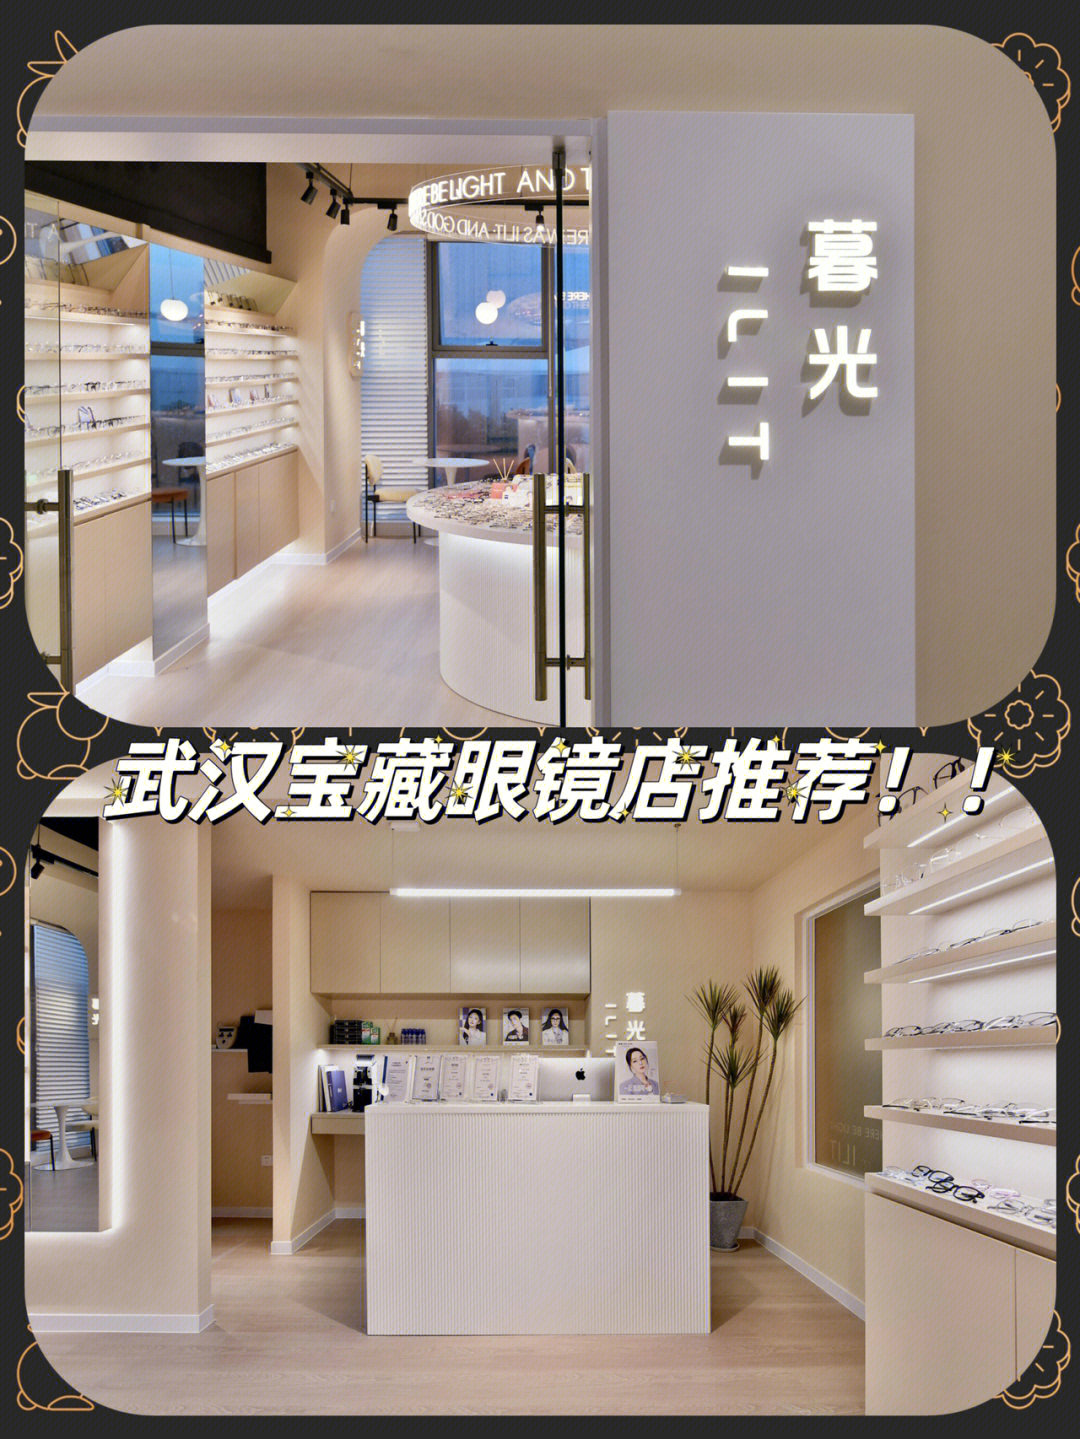 分享武汉二次配镜的宝藏眼镜店不是广子